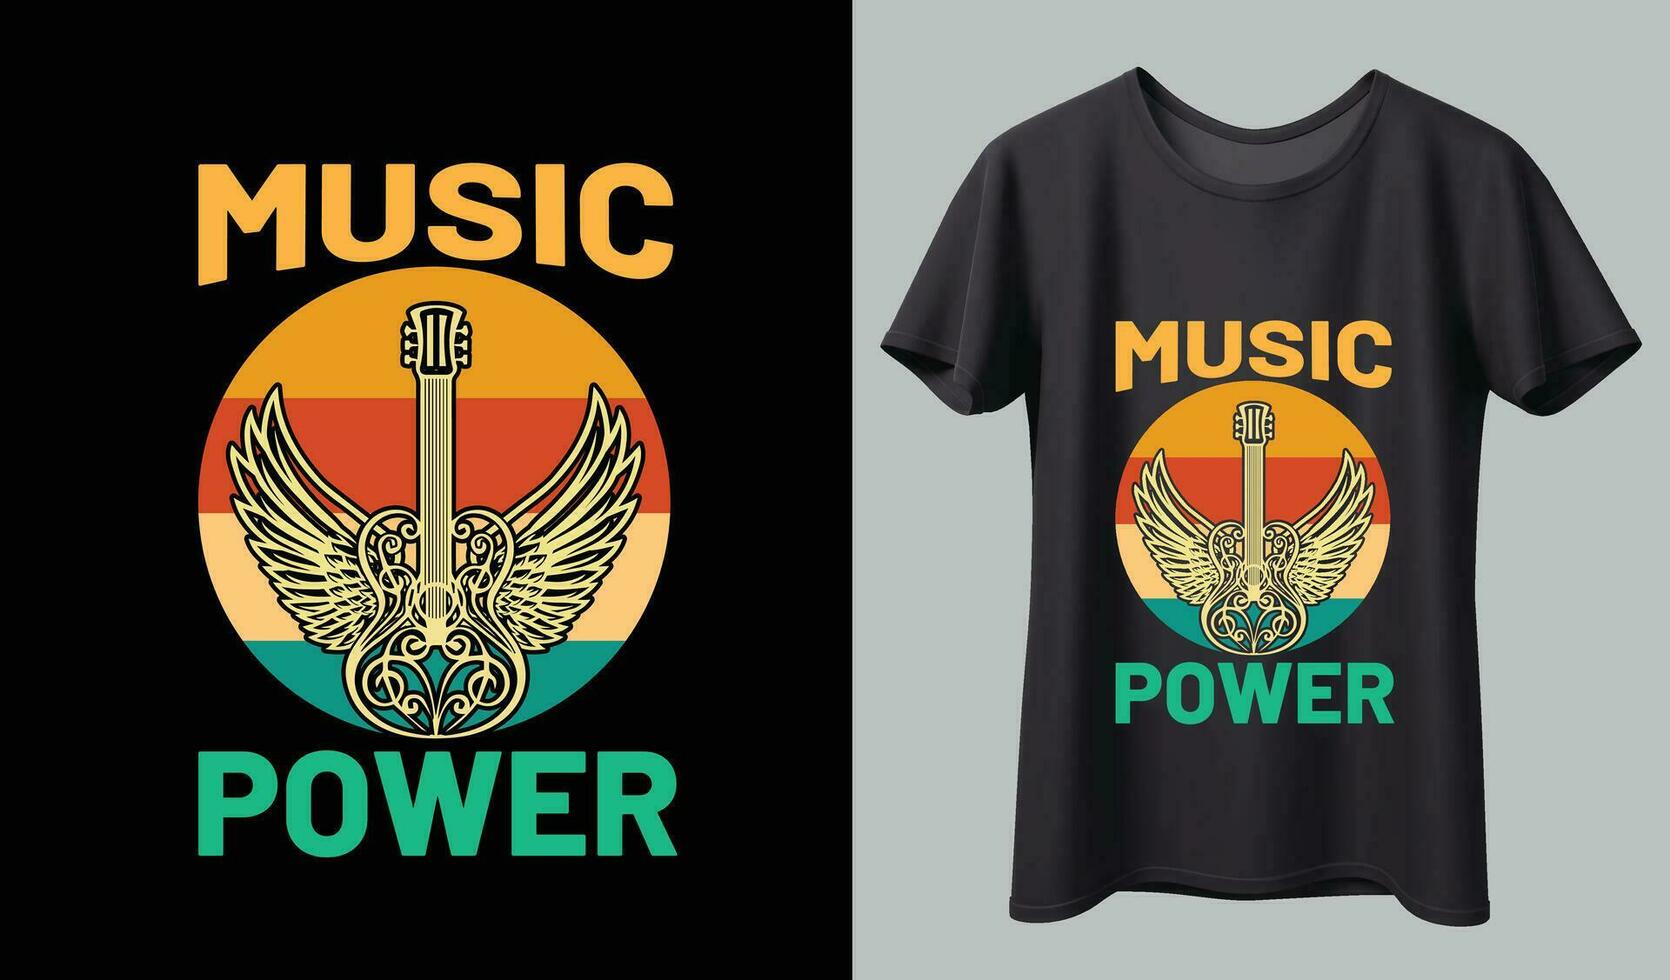 musik t-shirt design. musik t-shirt design vektor. för t-shirt skriva ut och Övrig använder. vektor